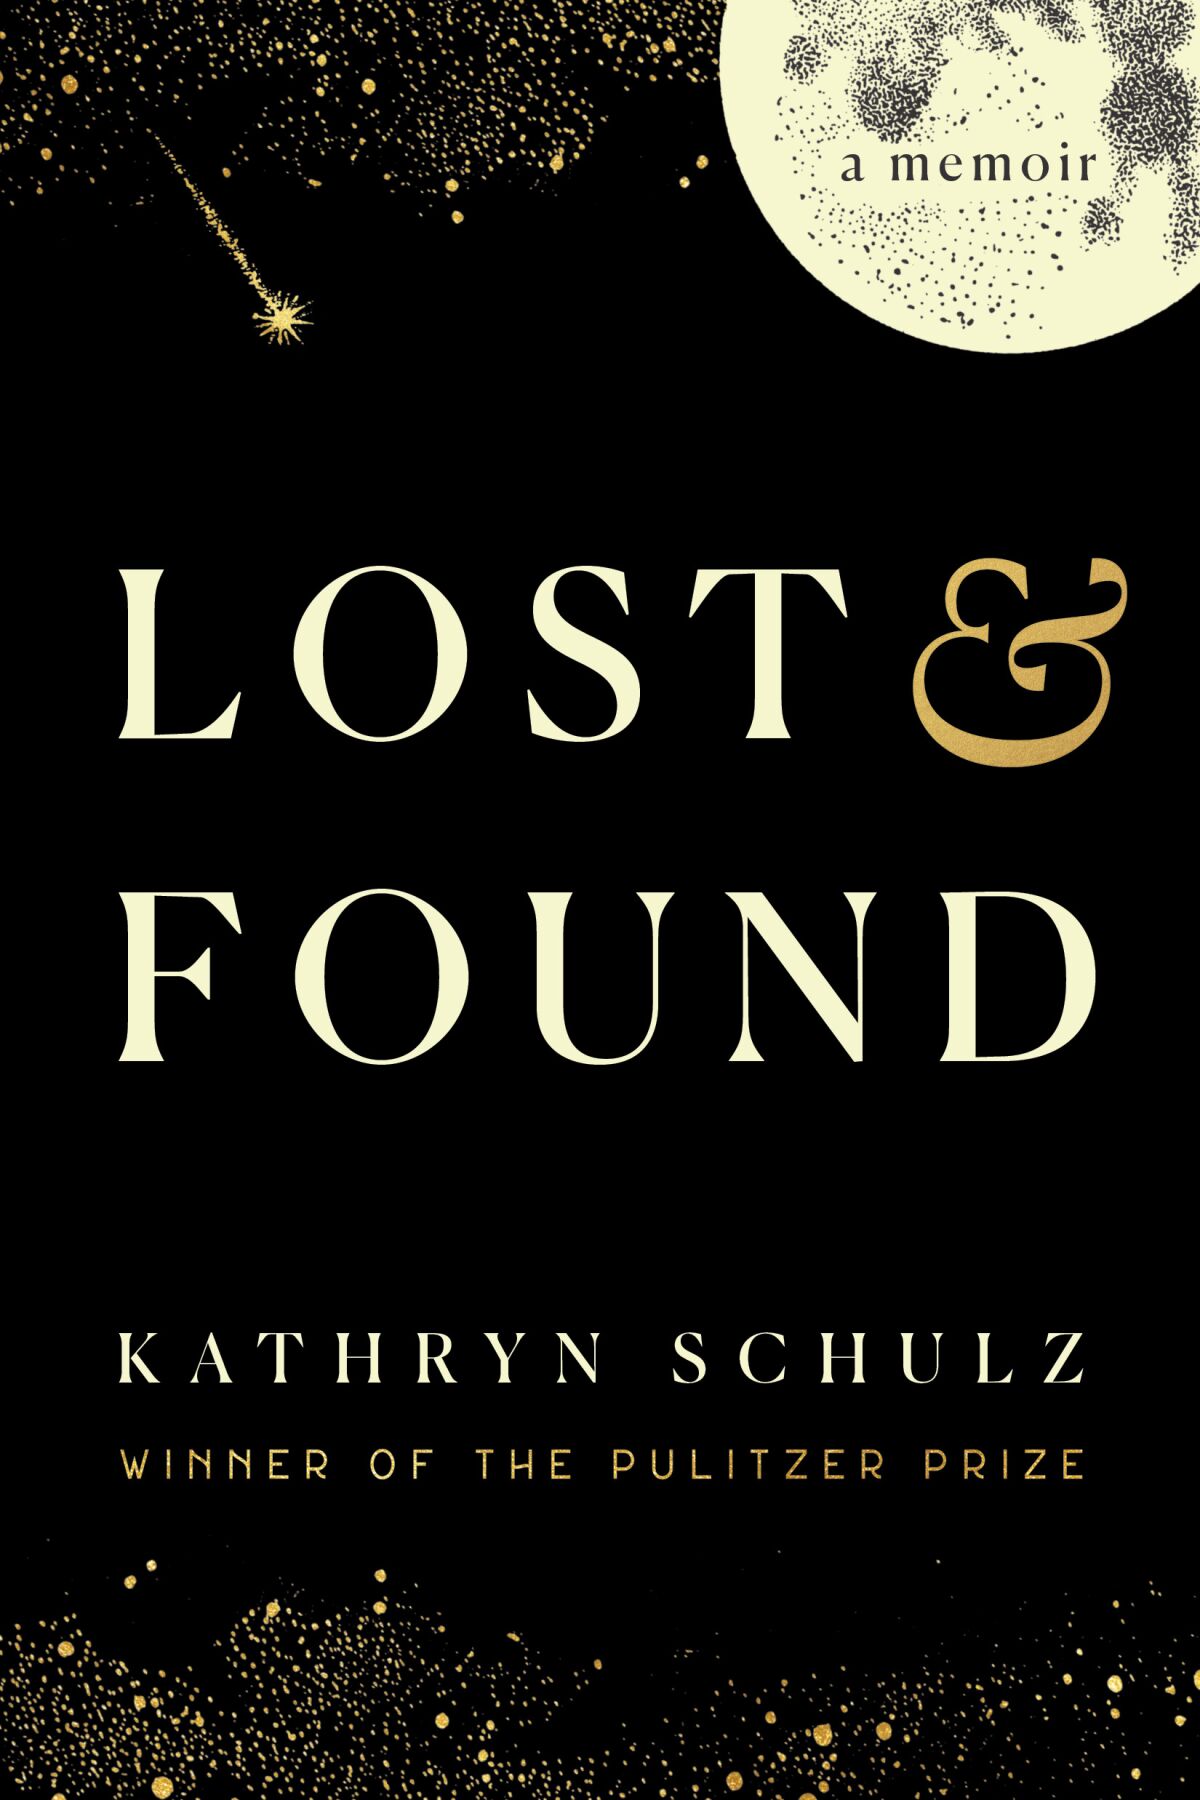 "Lost & Found," by Kathryn Schulz